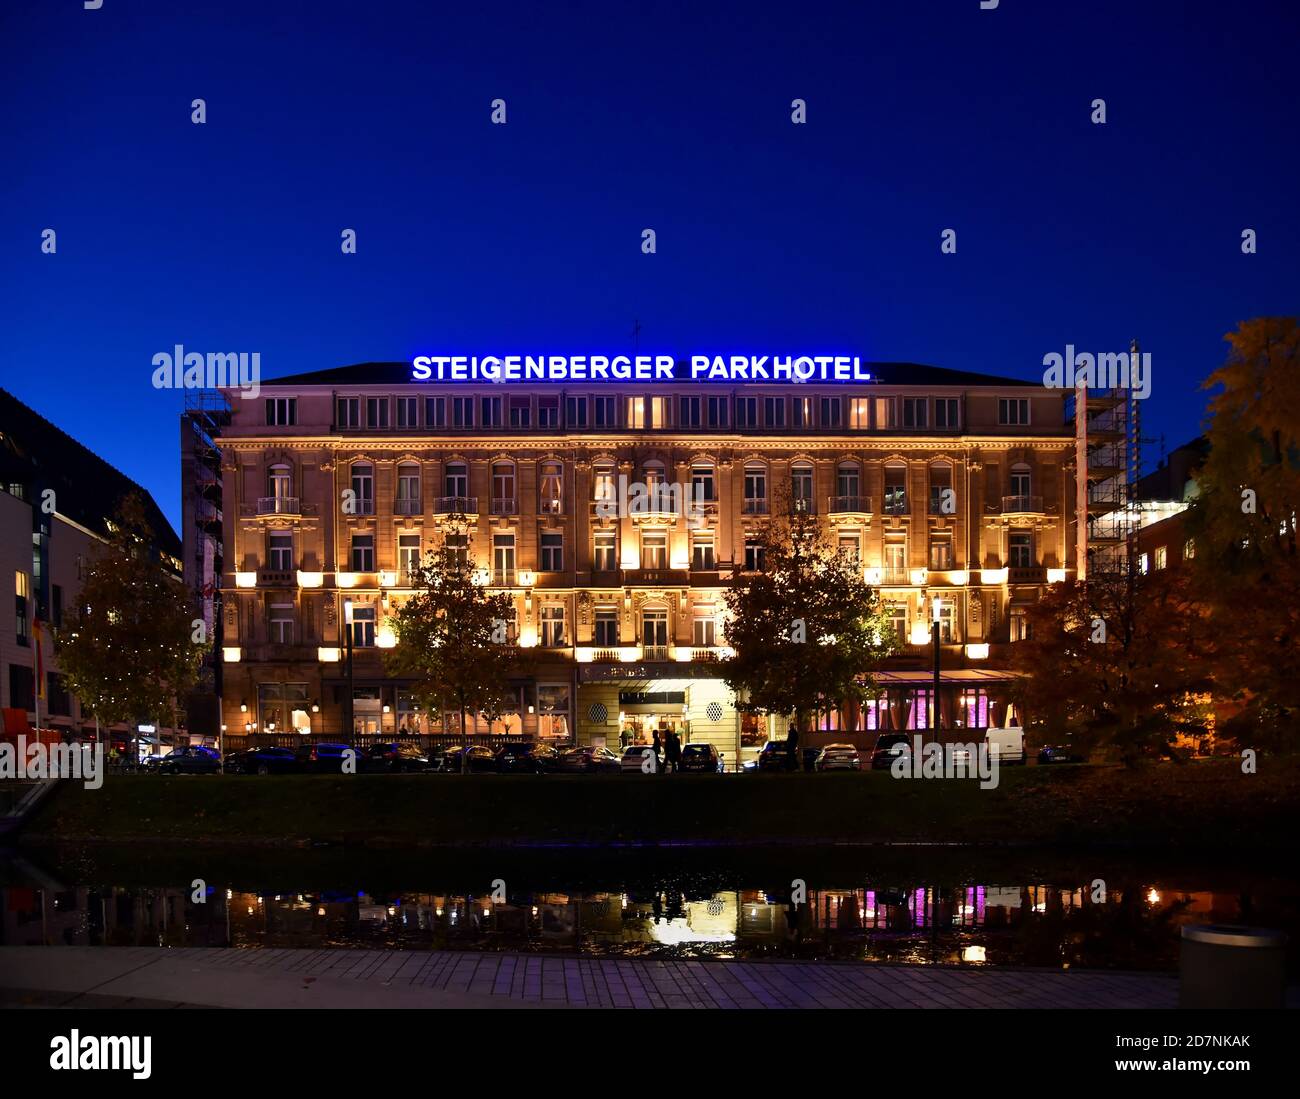 Vue extérieure de l'hôtel de luxe éclairé 'Steigenberger Parkhotel' (construit en 1902) la nuit avec ciel bleu nocturne et arbres de Noël devant. Banque D'Images